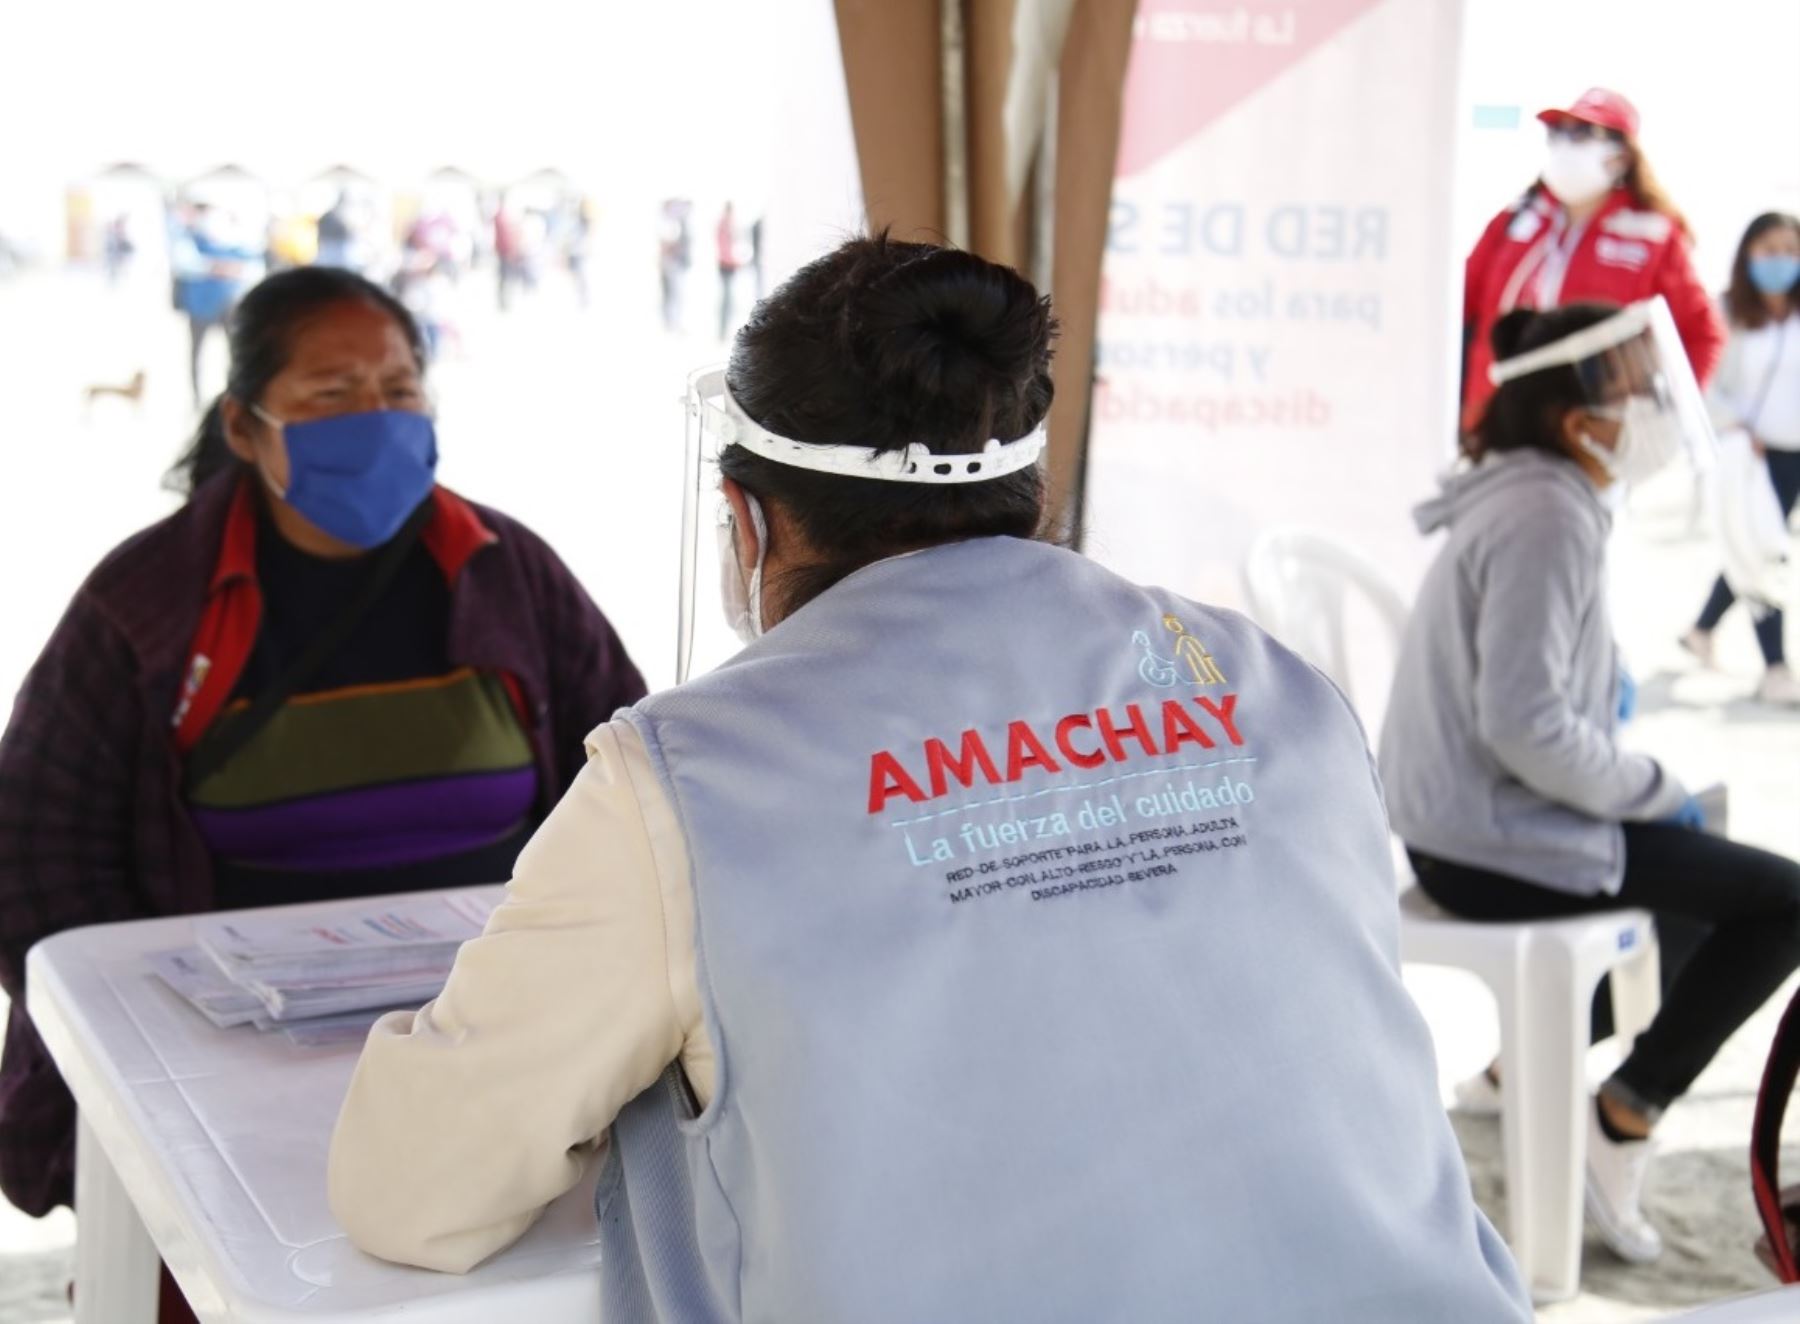 La Red Amachay monitorea la situación de más de 186,000 personas en situación de alto riesgo y vulnerabilidad frente a la pandemia de coronavirus (covid-19). ANDINA/Difusión